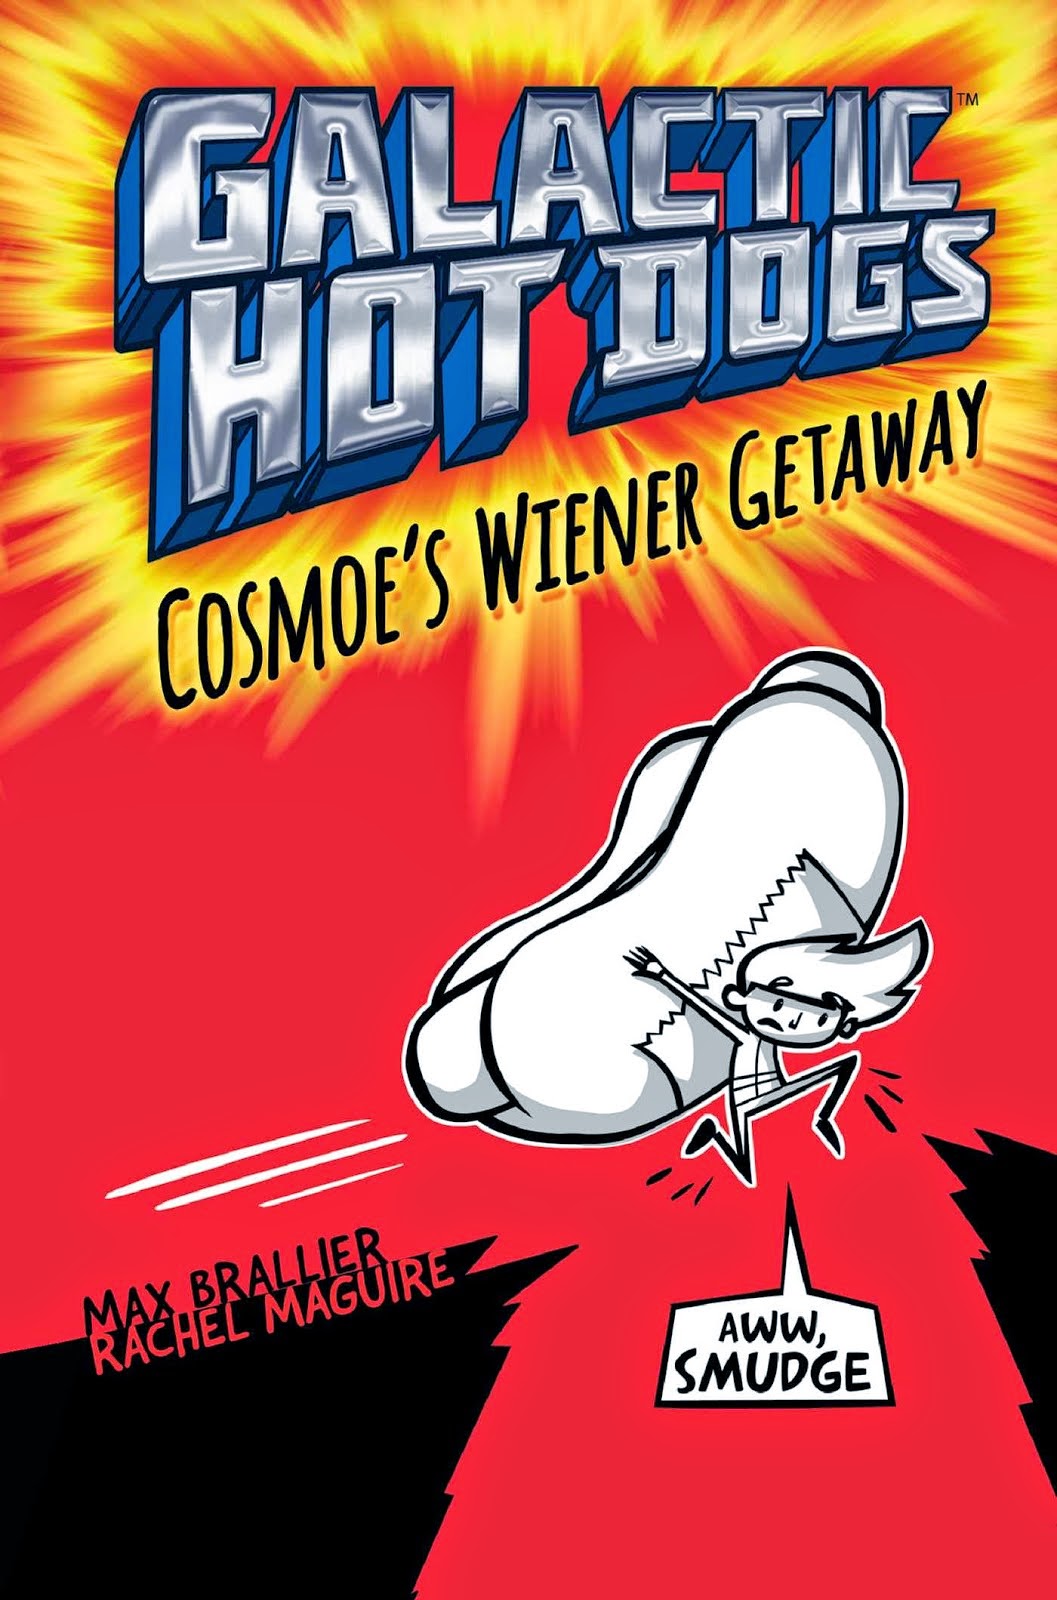 Max Brallier - Galactic Hot Dogs: Cosmoe's Wiener Getaway 5/13/15 7:00pm